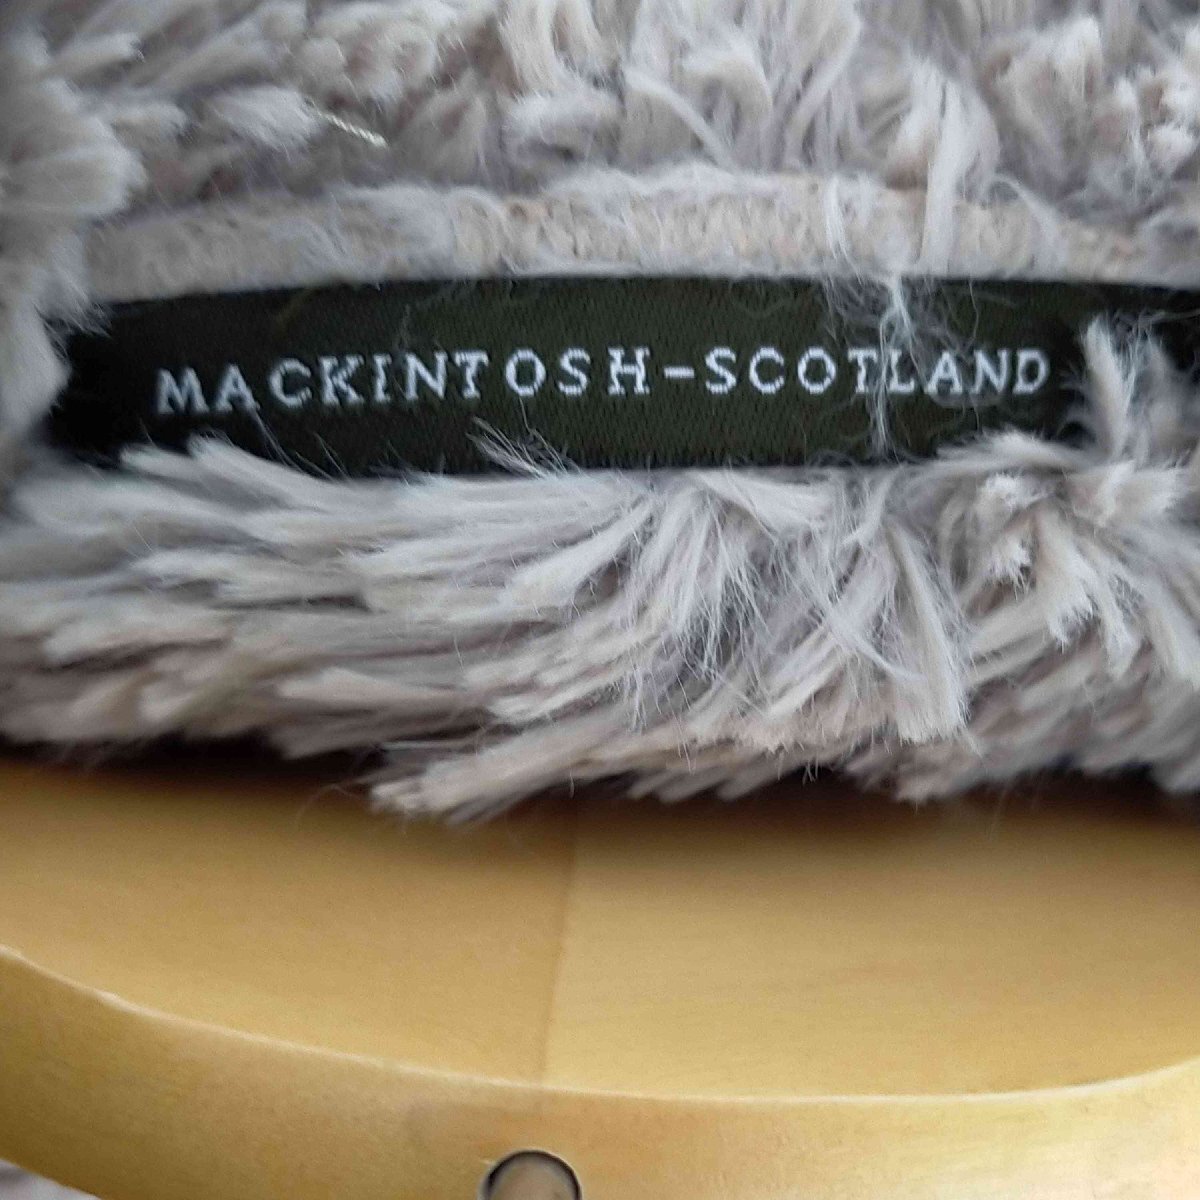 Mackintosh(マッキントッシュ) SCOTLAND コート キルティング 裏ボア フード レディー 中古 古着 0643_画像6